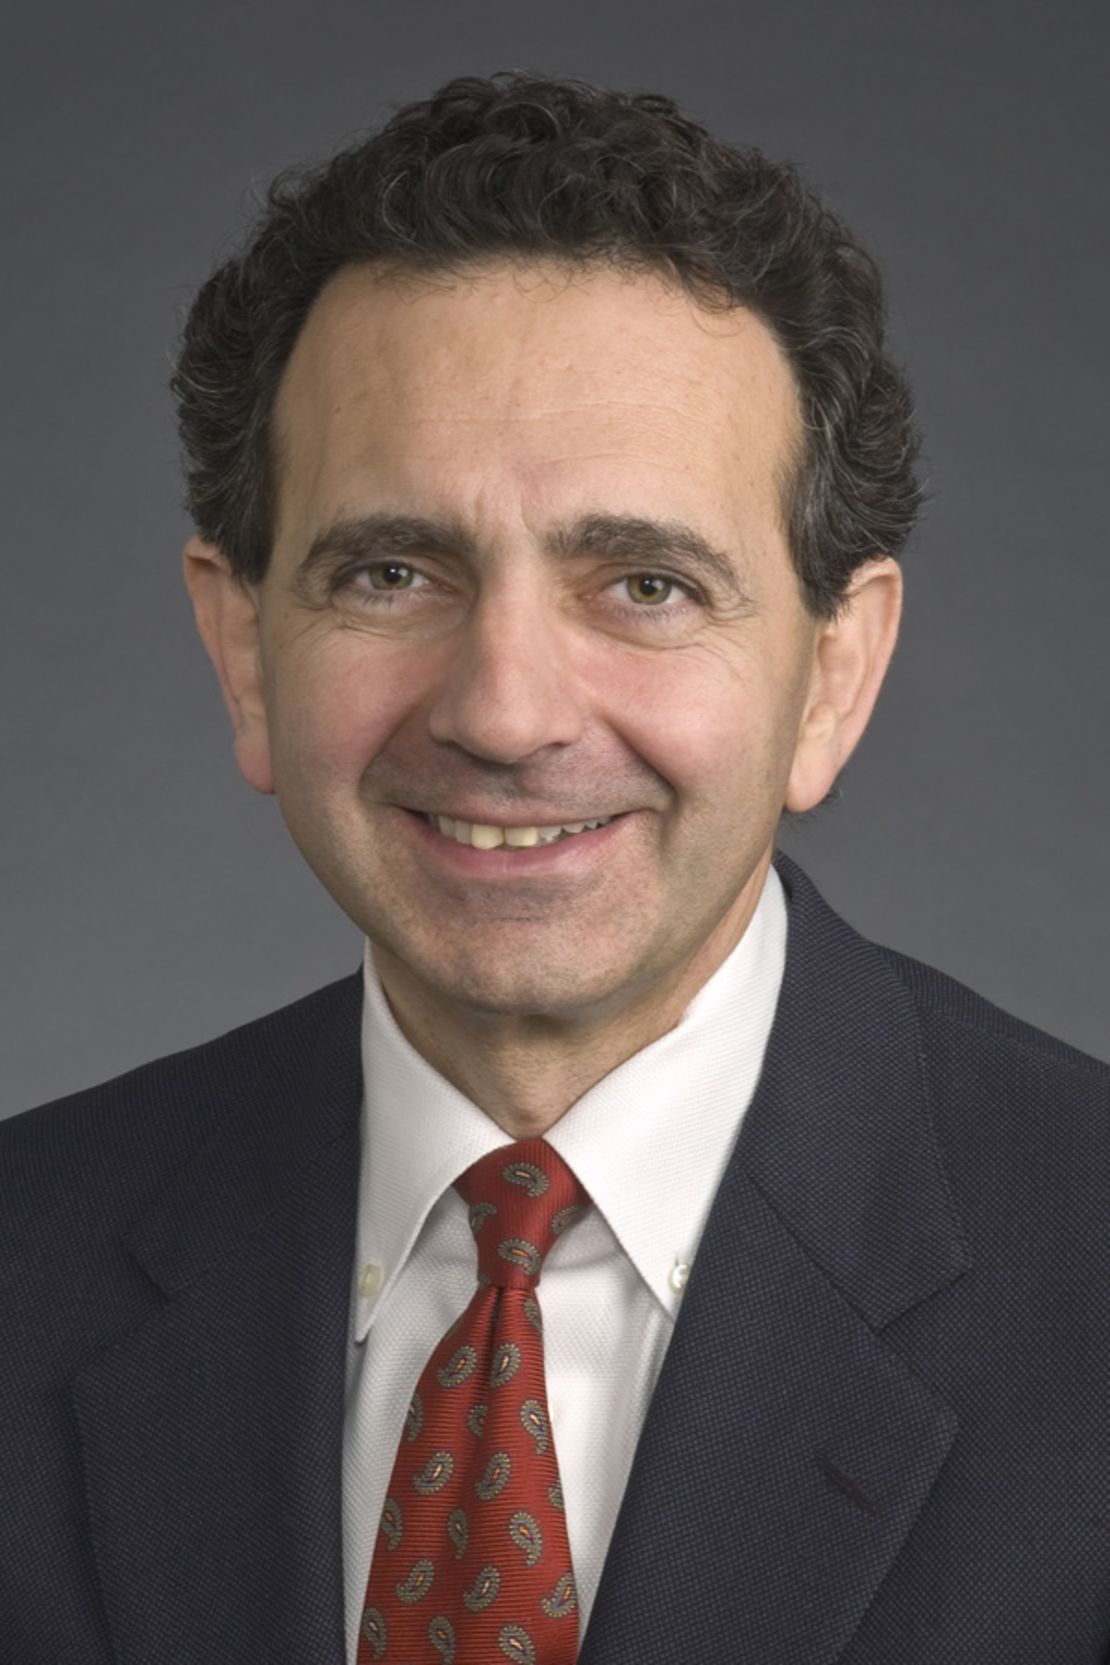 Dr. Anthony Atala